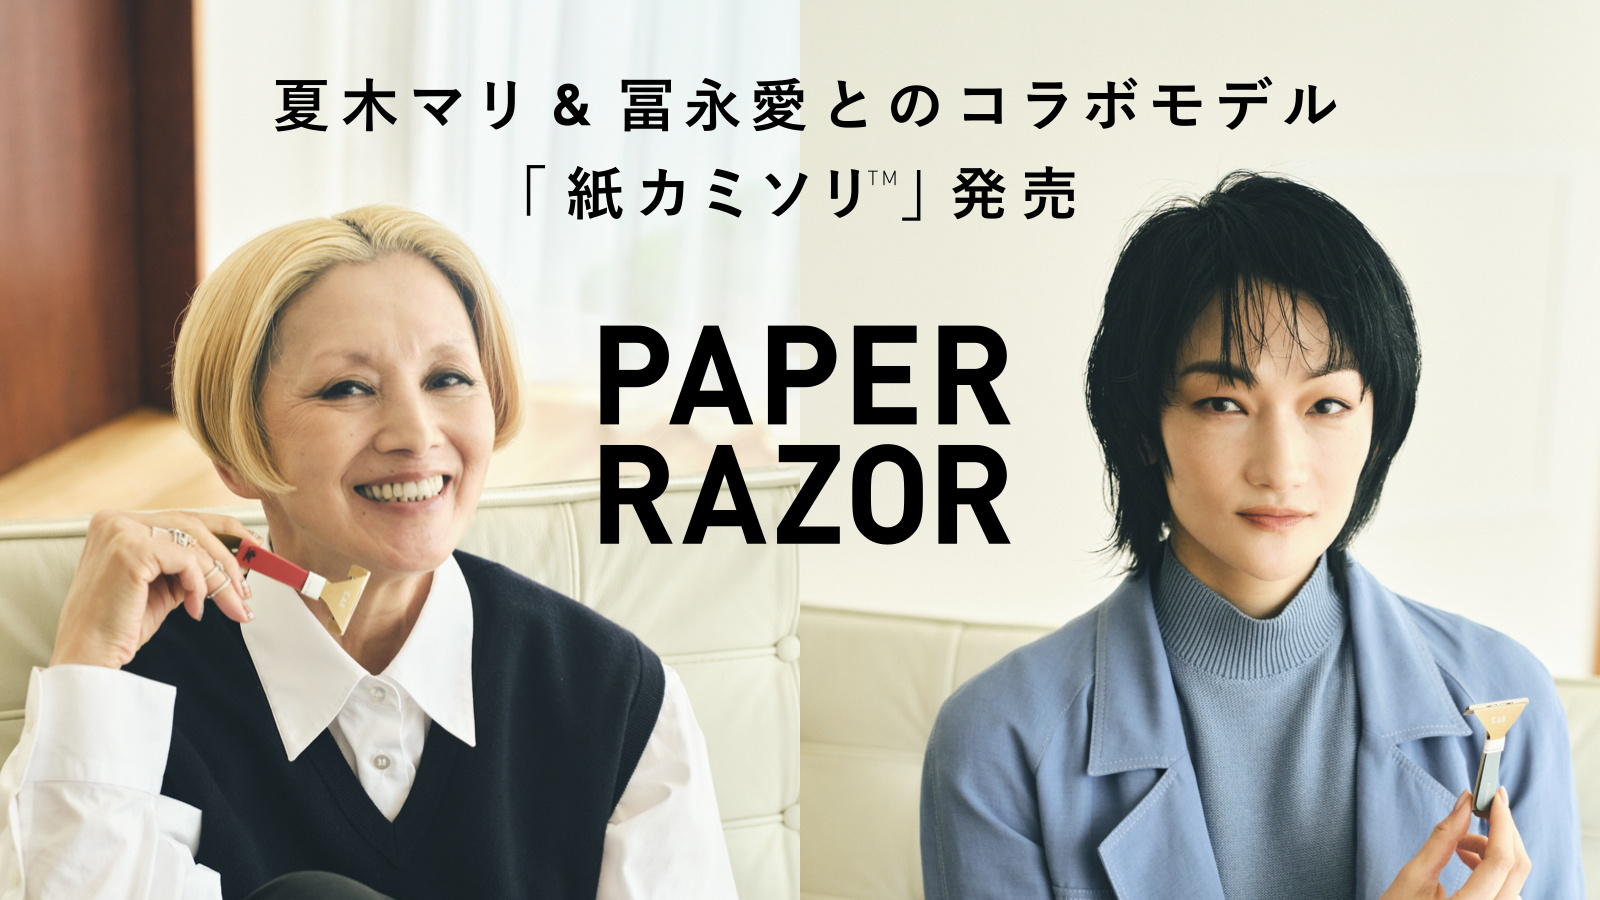 脱プラスチック 1とsdgsがコンセプトの世界初 2の 紙カミソリ 夏木マリさん 冨永愛 さんとのコラボレーションデザインを数量限定発売 貝印株式会社のプレスリリース